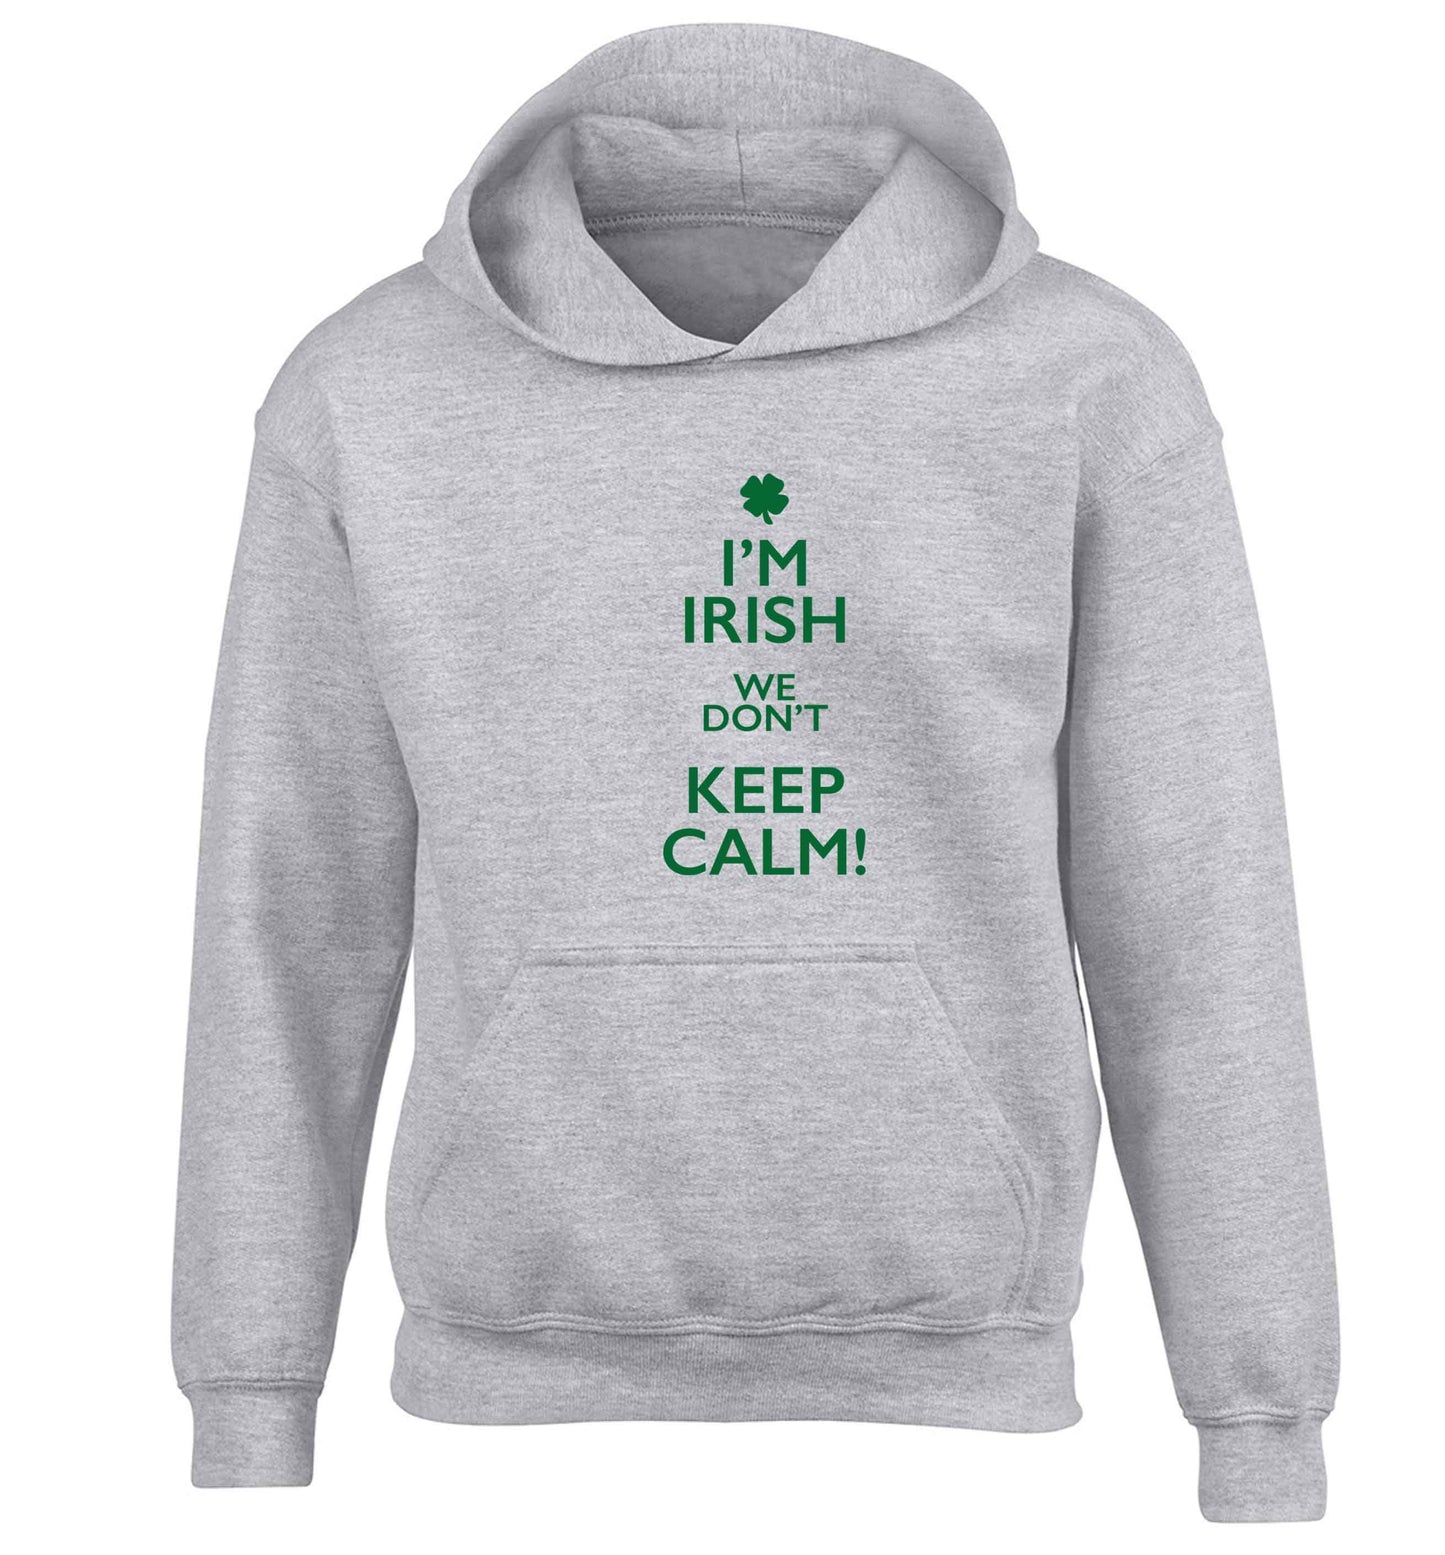 I'm Irish we don't keep calm children's grey hoodie 12-13 Years